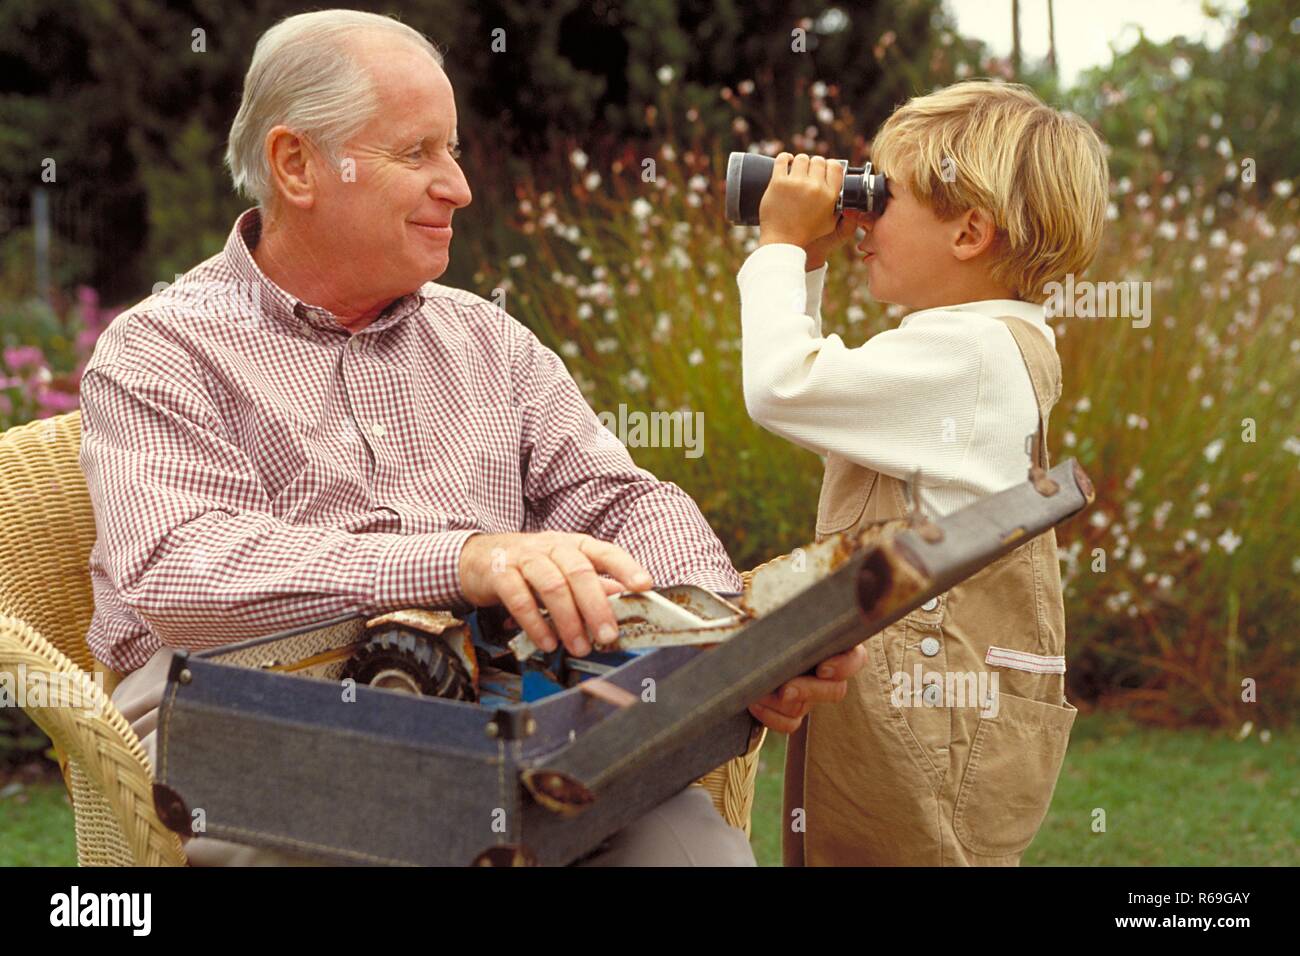 Piscine, 6 Jahre alter blonder Junge mit beiger Latzhose bekleidet steht mit seinem Grossvater neben 10-30, der mit einem Koffer Spielsachen auf den Beinen auf einem Korbsessel sitzt im Garten Banque D'Images